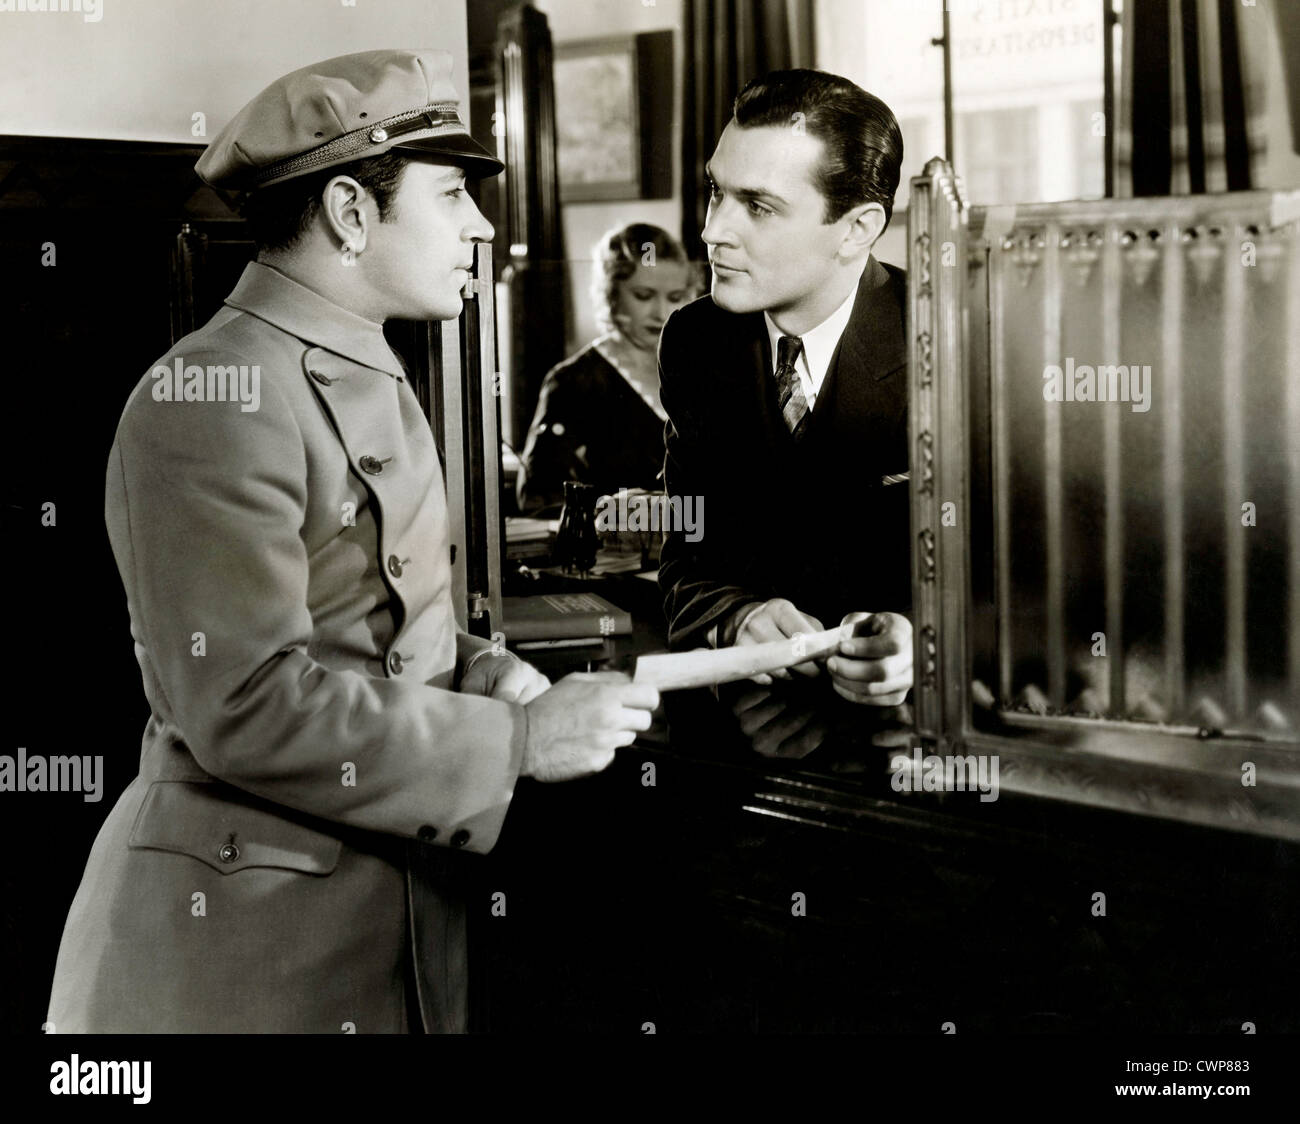 IF I HAD A MILLION (1932) GEORGE RAFT ERNST LUBITSCH (DIR) 004 MOVIETORE COLLECTION LTD Stock Photo